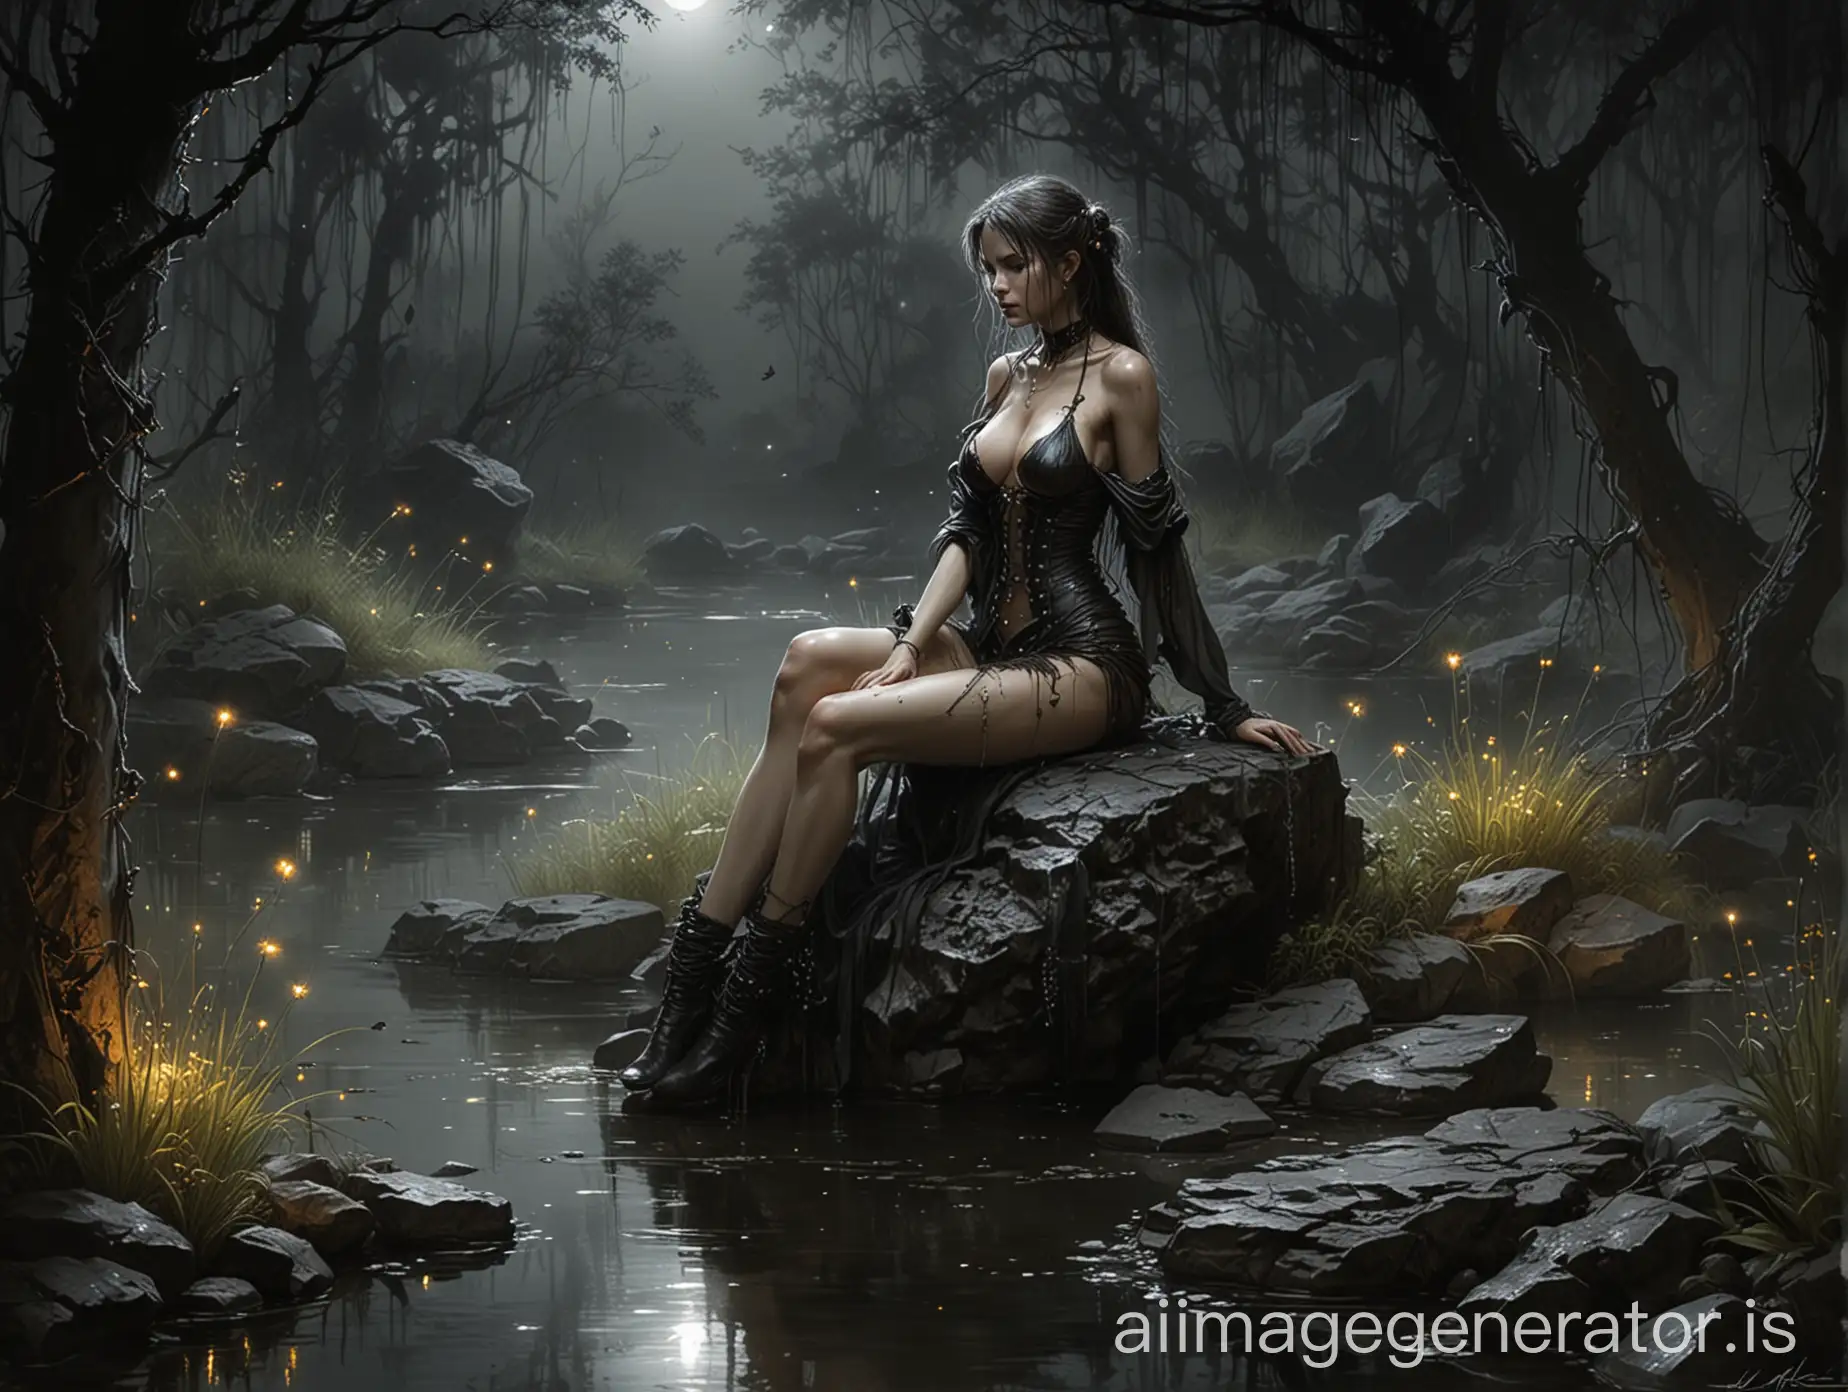 luis royo inspired dark art, dark gloomy gardenscape, sitting on a wet rock by the pond, nightime, fireflies